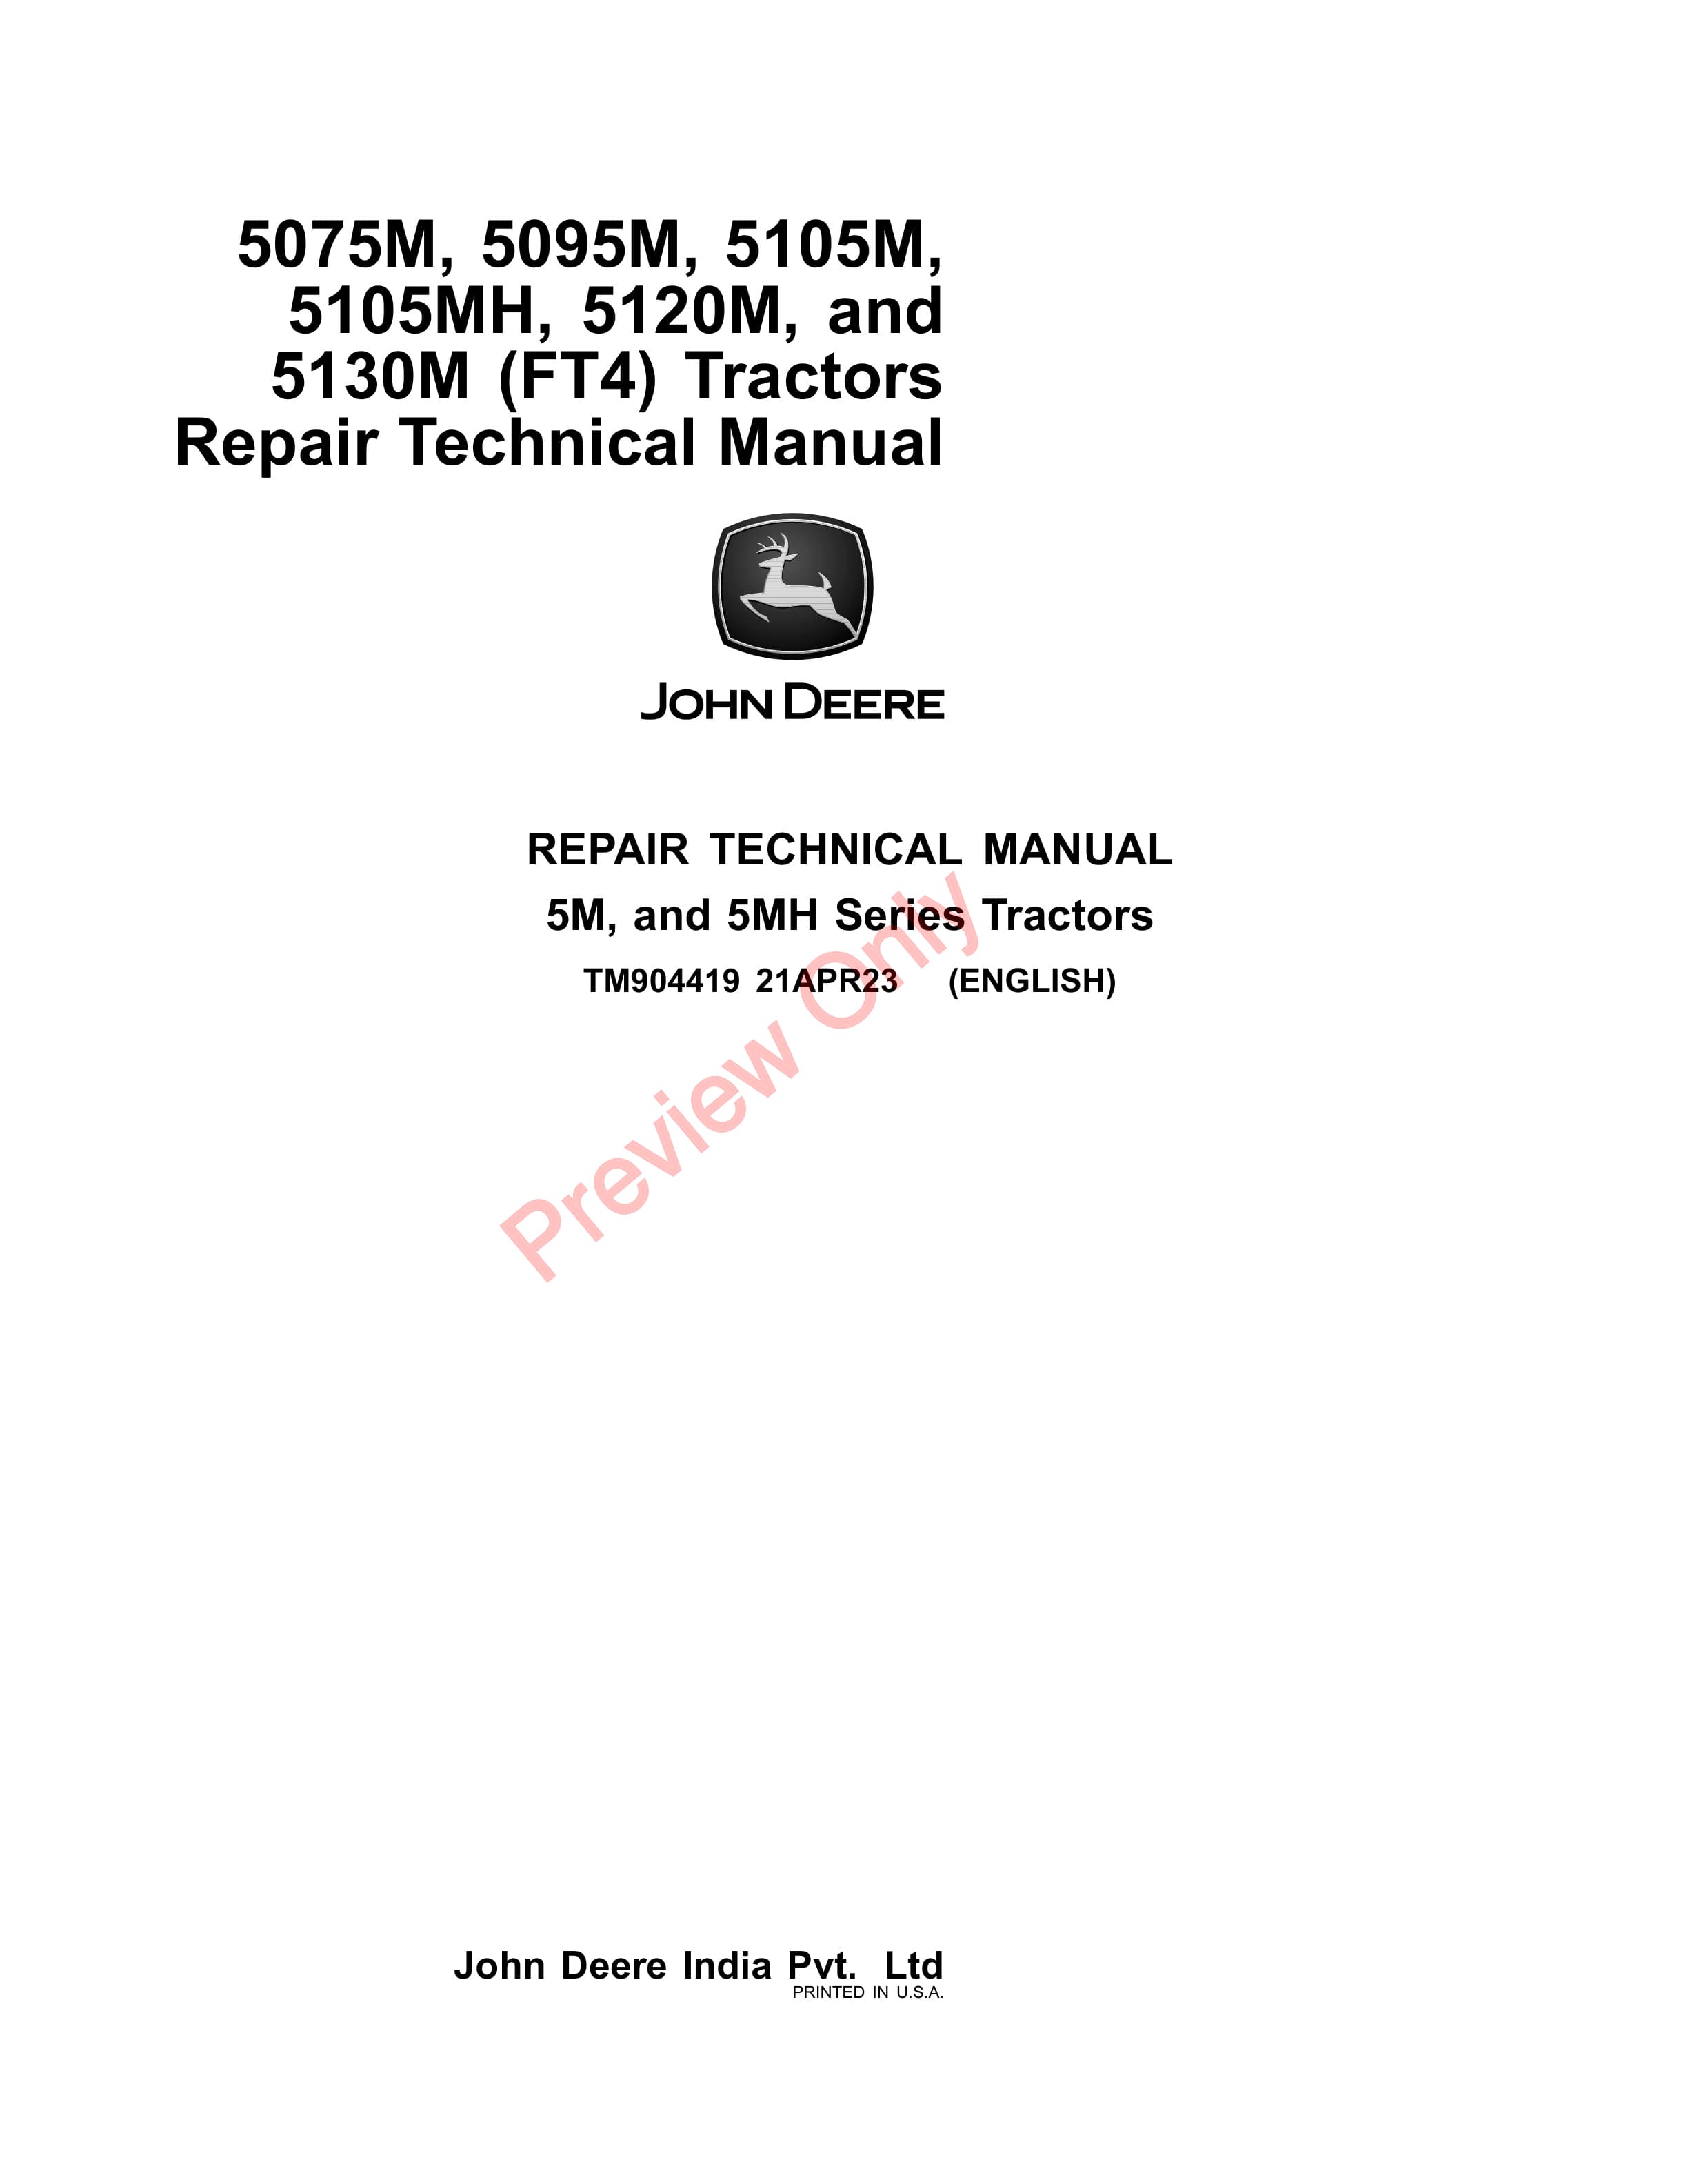 John Deere 5075M 5095M 5105M 5105MH and 5120M FT4 Tractors Repair Technical Manual TM904419 21APR23 1